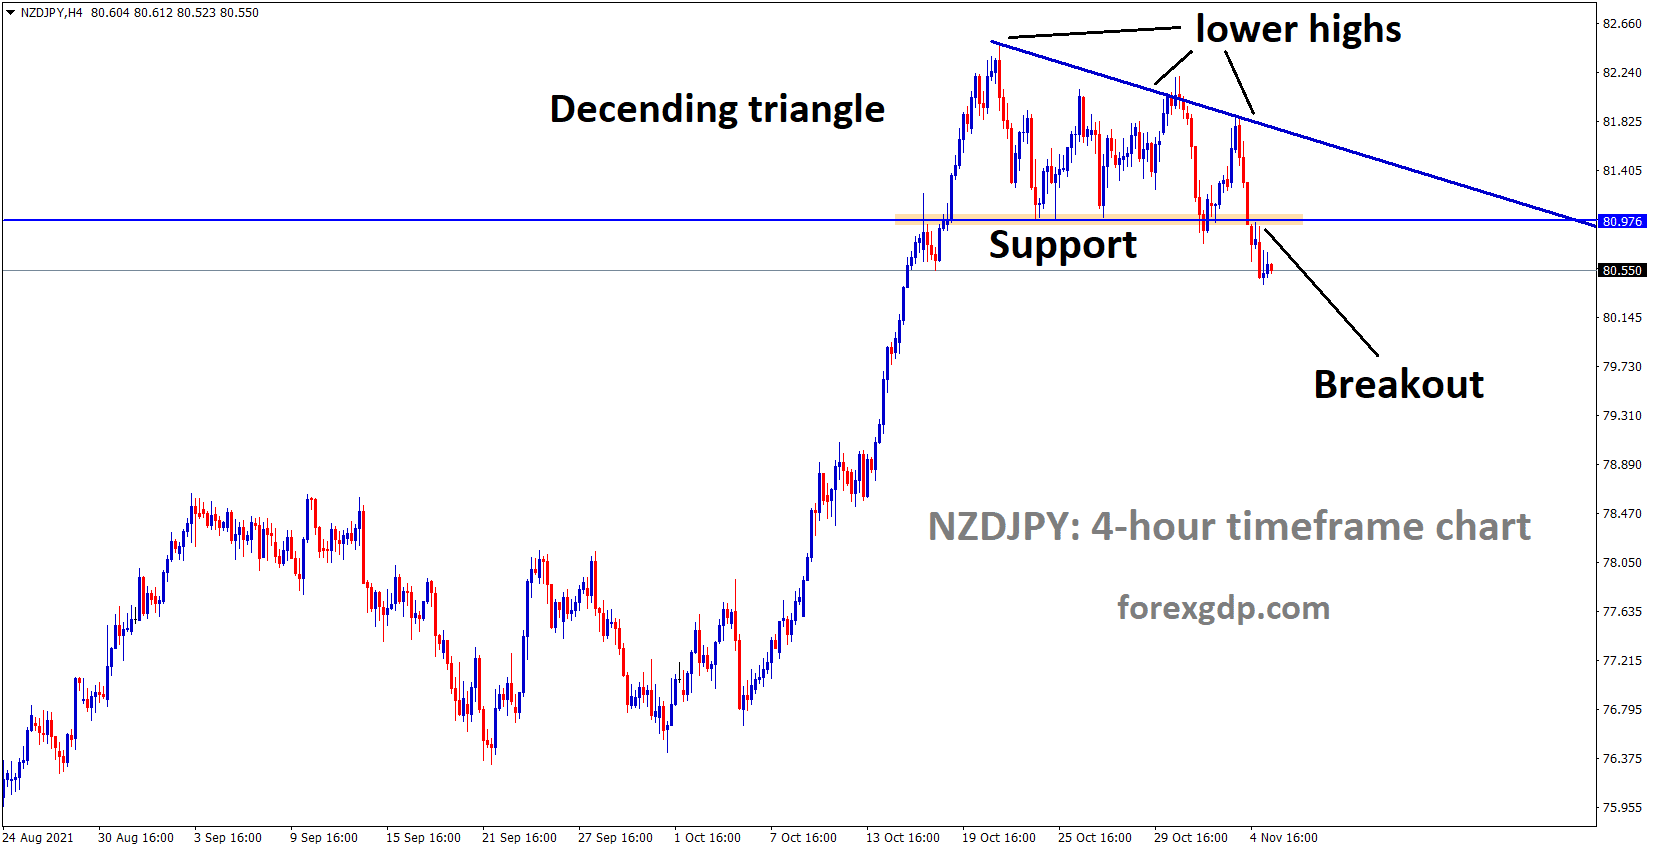 NZDJPY has broken the descending triangle pattern on the downside.